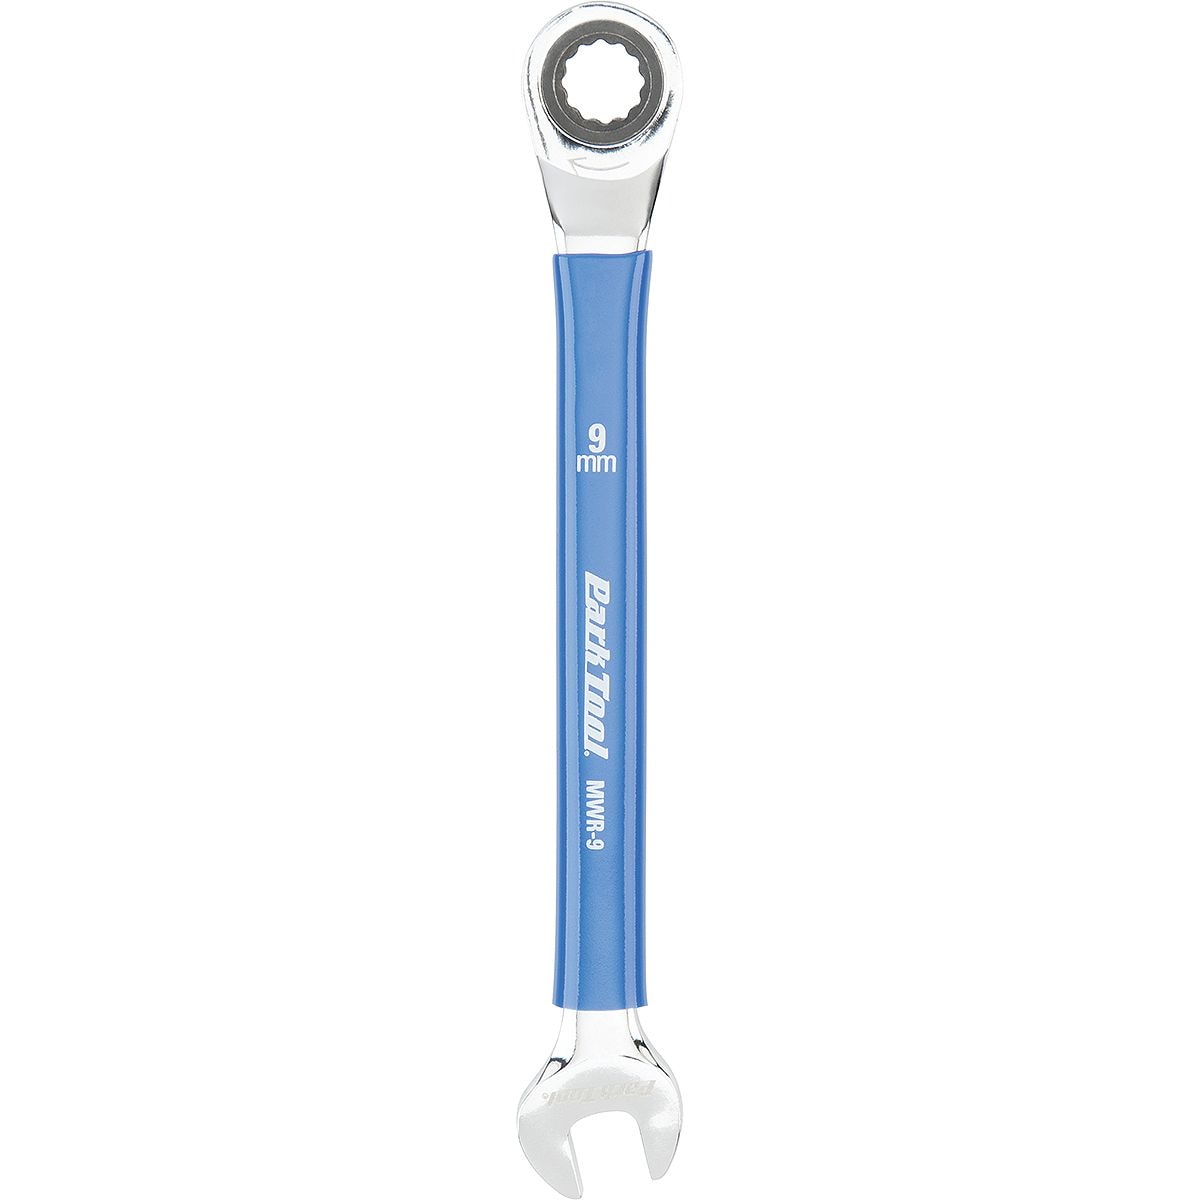 Метрический ключ с храповым механизмом Park Tool, синий импланты моментный ключ с храповым механизмом комплект совместим со всеми основными имплантата dentium dask синуслифтинг инструменты